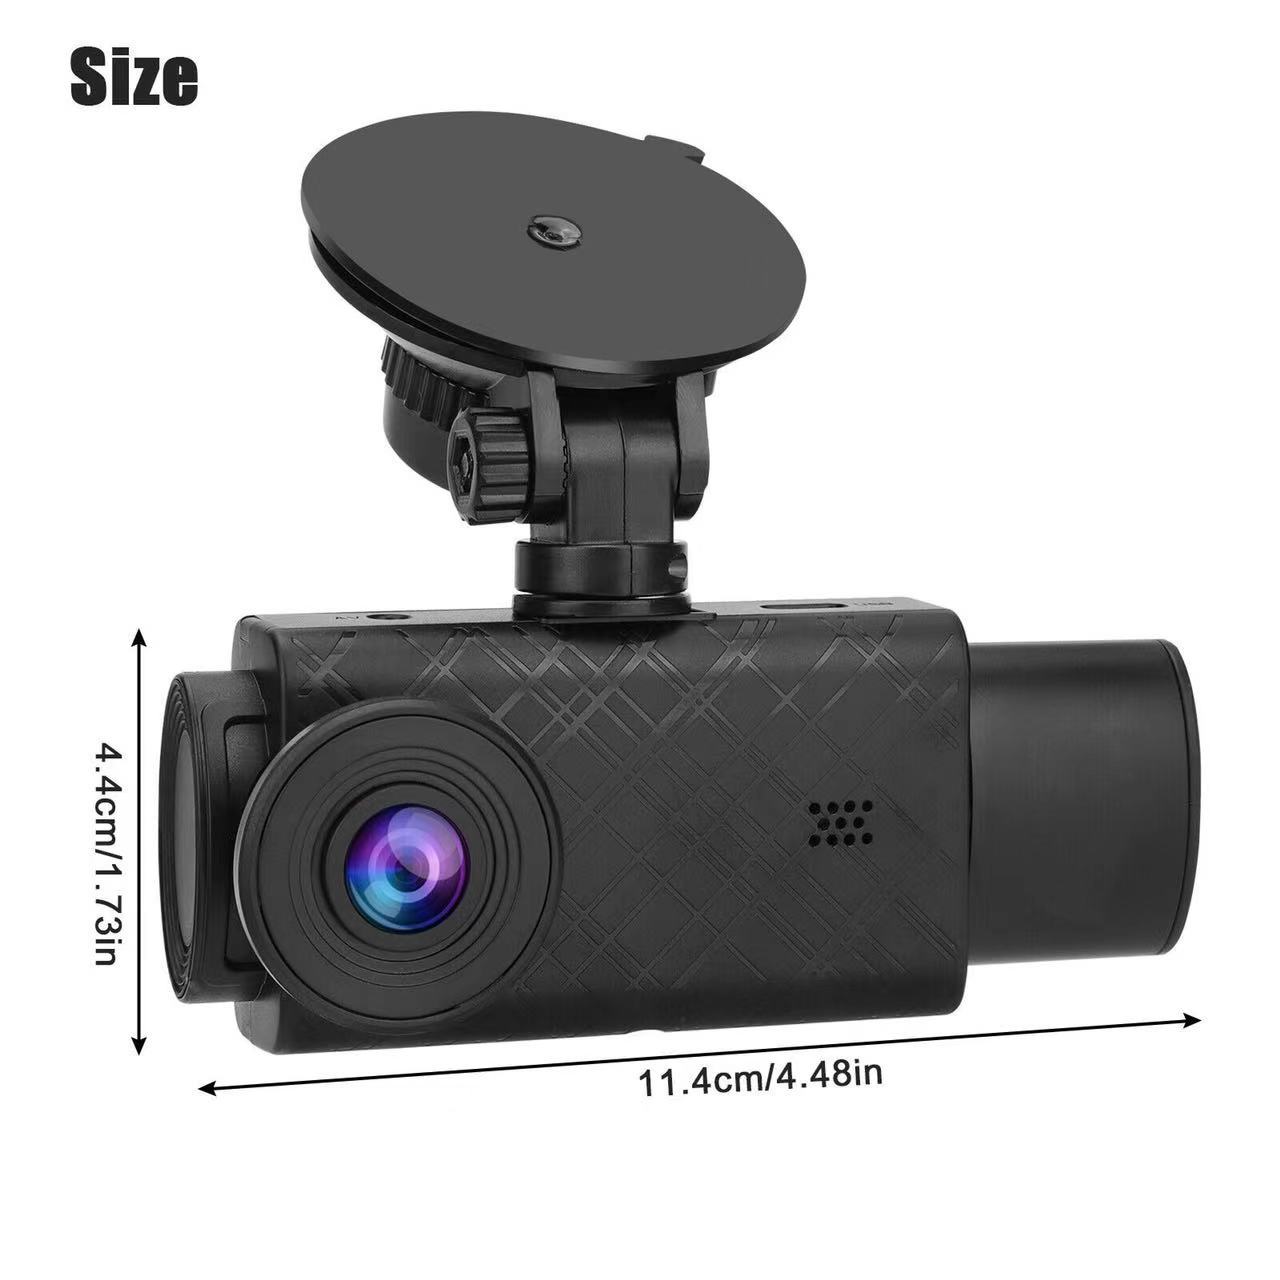 2.0 pouces voiture DVR 3 canaux Dash Cam vedio enregistreur Black Box double objectif DVR avec vue arrière caméra boucle enregistrement objectif grand angle S11